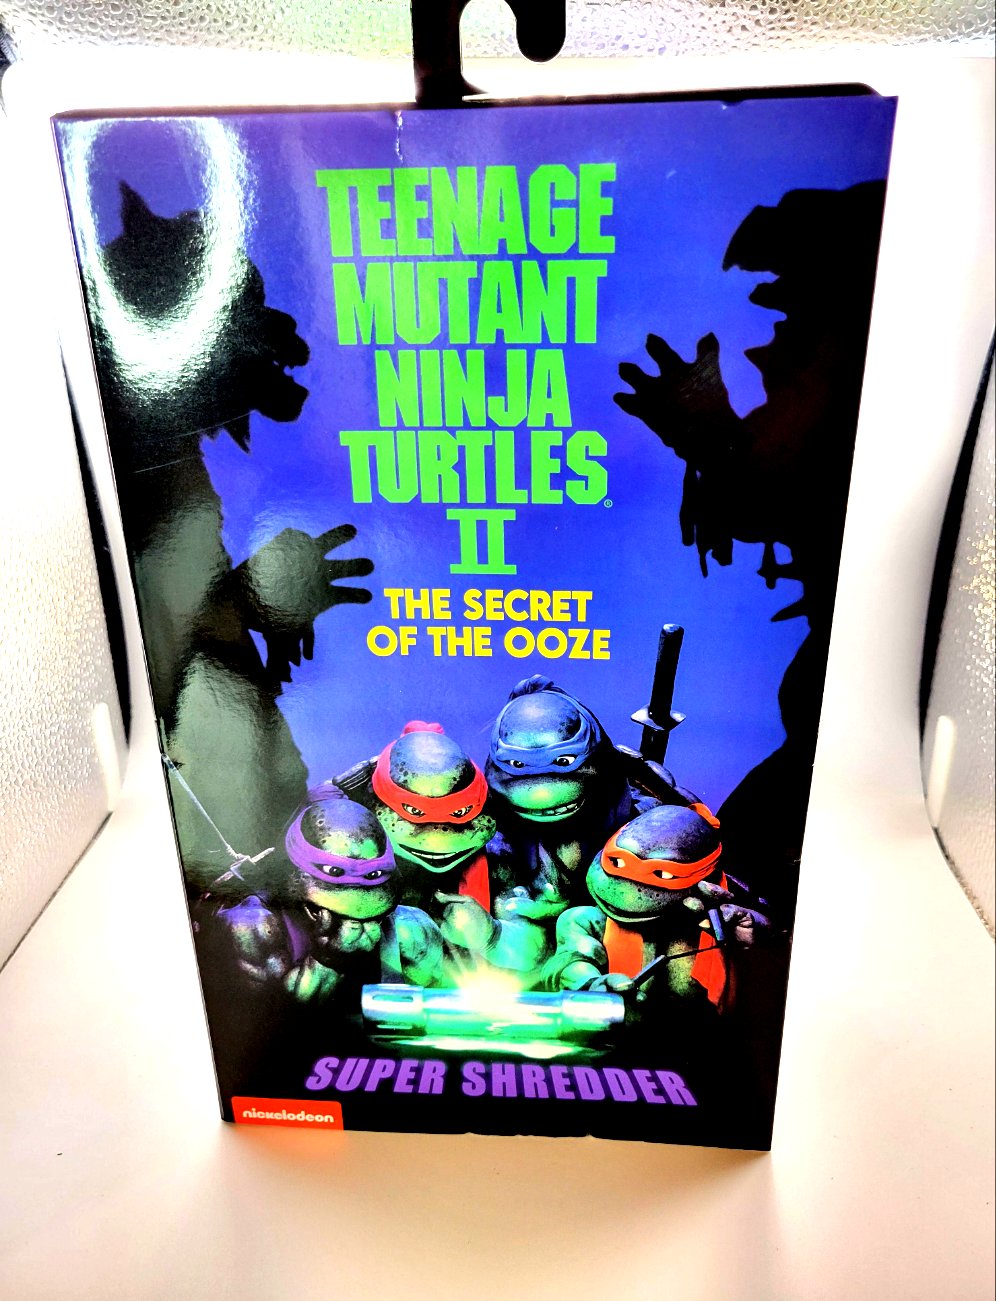 Neca Teenage Mutant Ninja Turtles II The Secret Of The Ooze Super Shredder Ultimate Action Figure